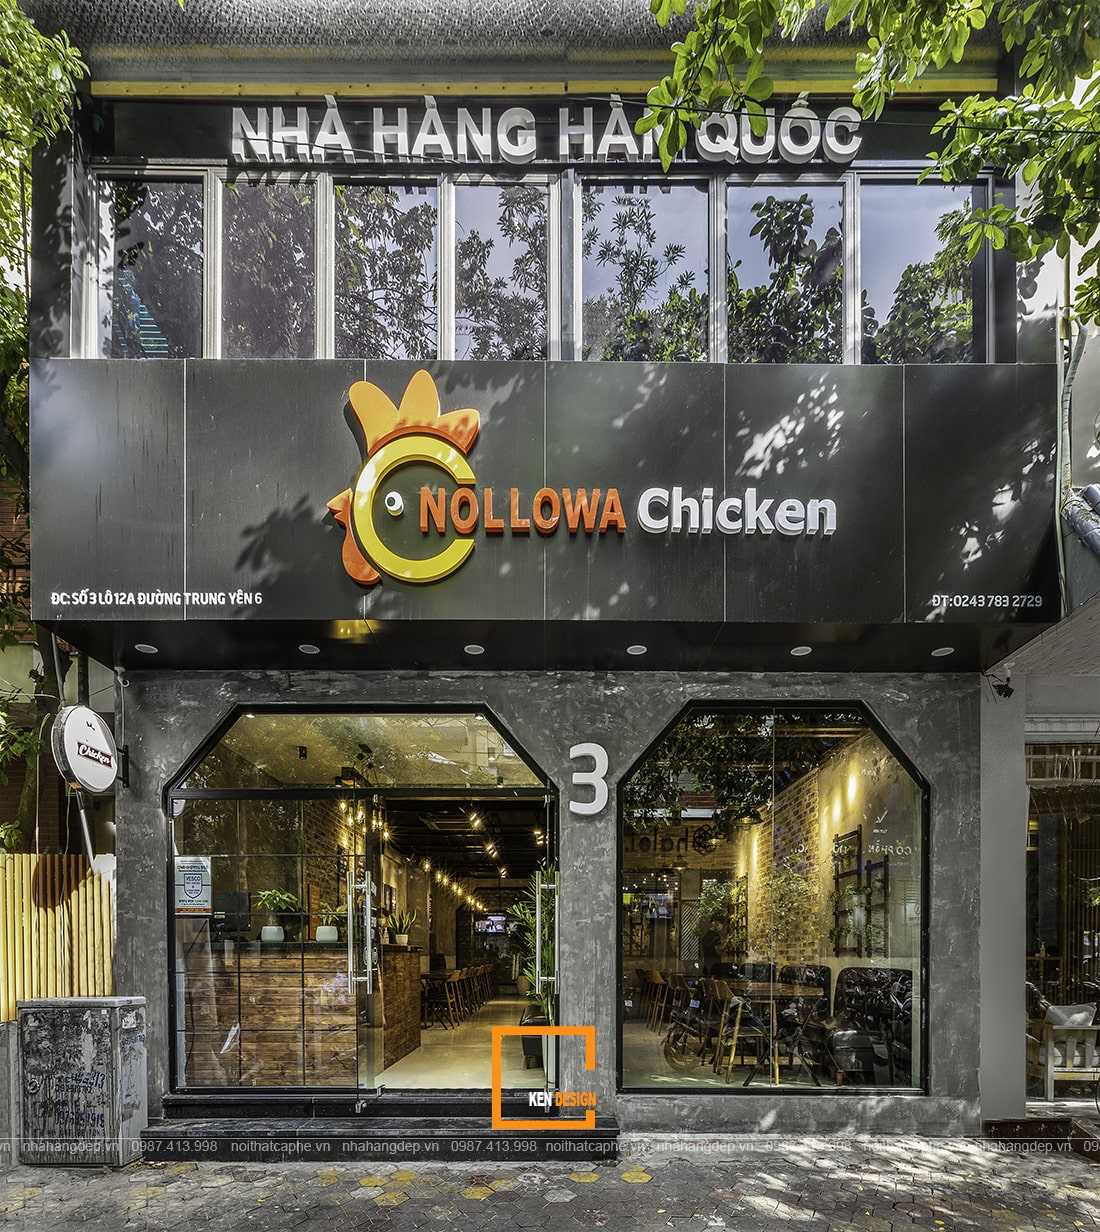 Thi công nhà hàng Nollowa Chicken tại Hà Nội